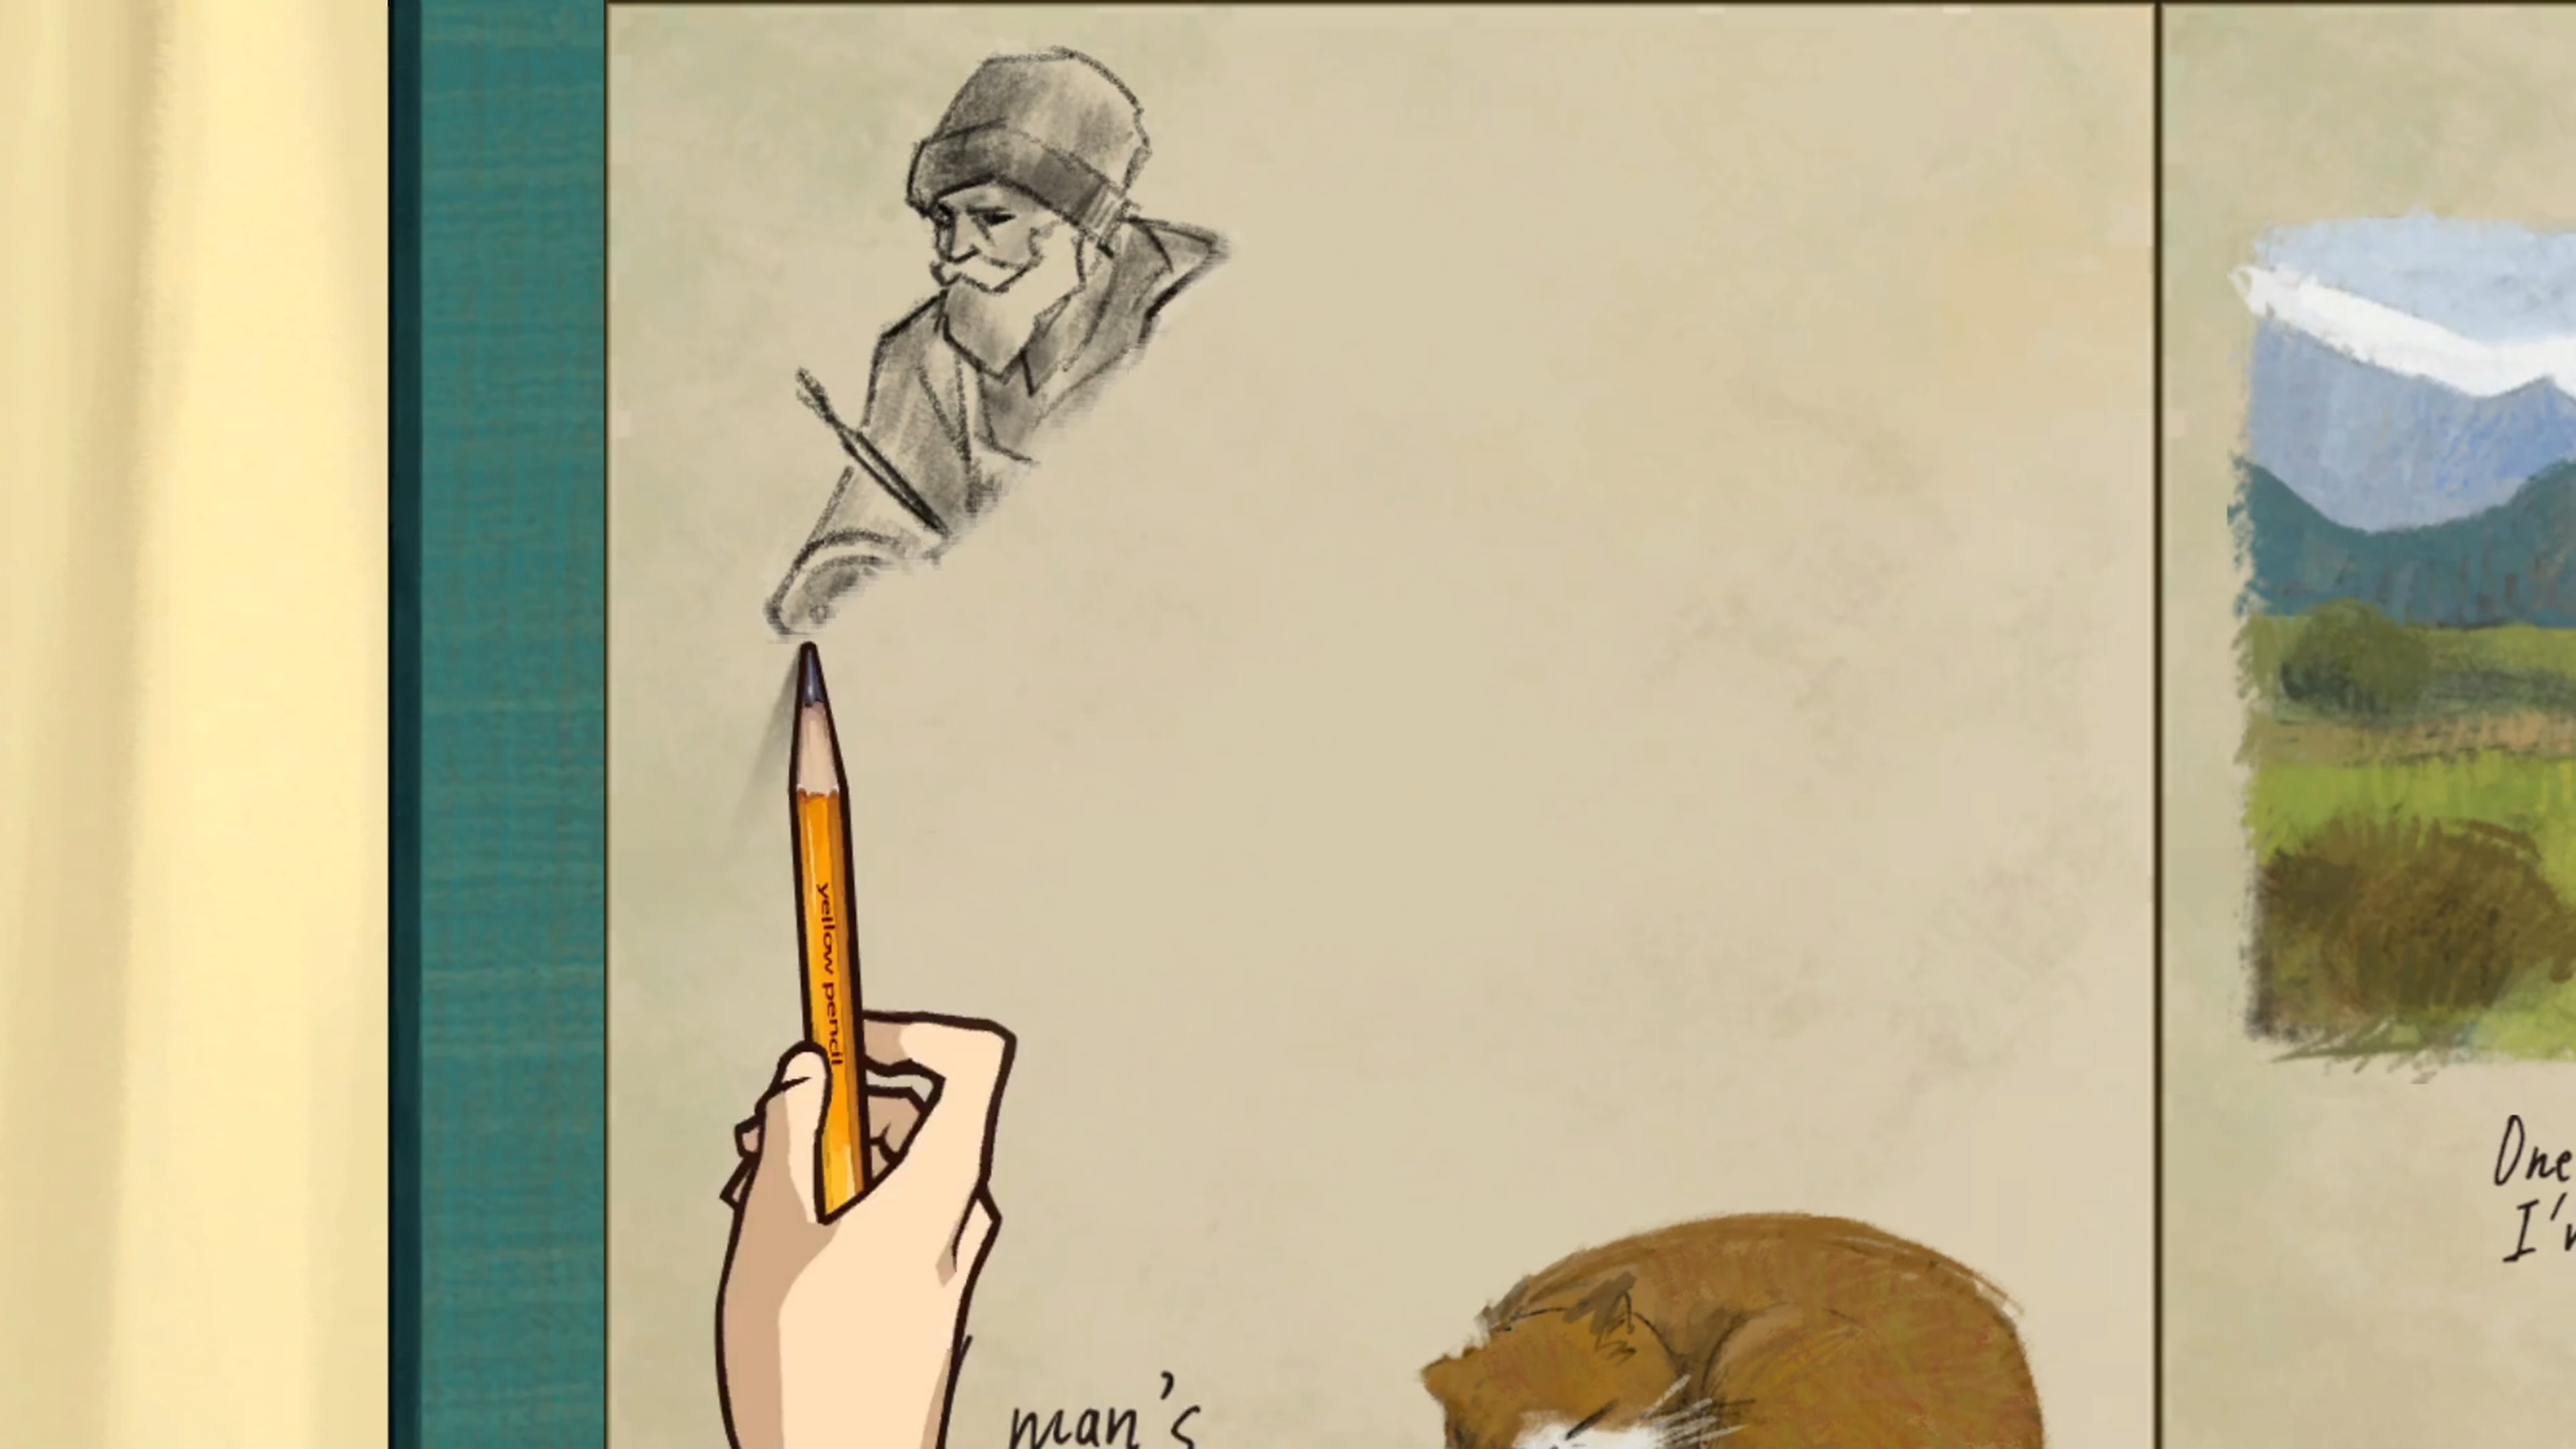 Behind the Frame: The Finest Scenery – zrzut ekranu przedstawiający postać rysującą ołówkiem